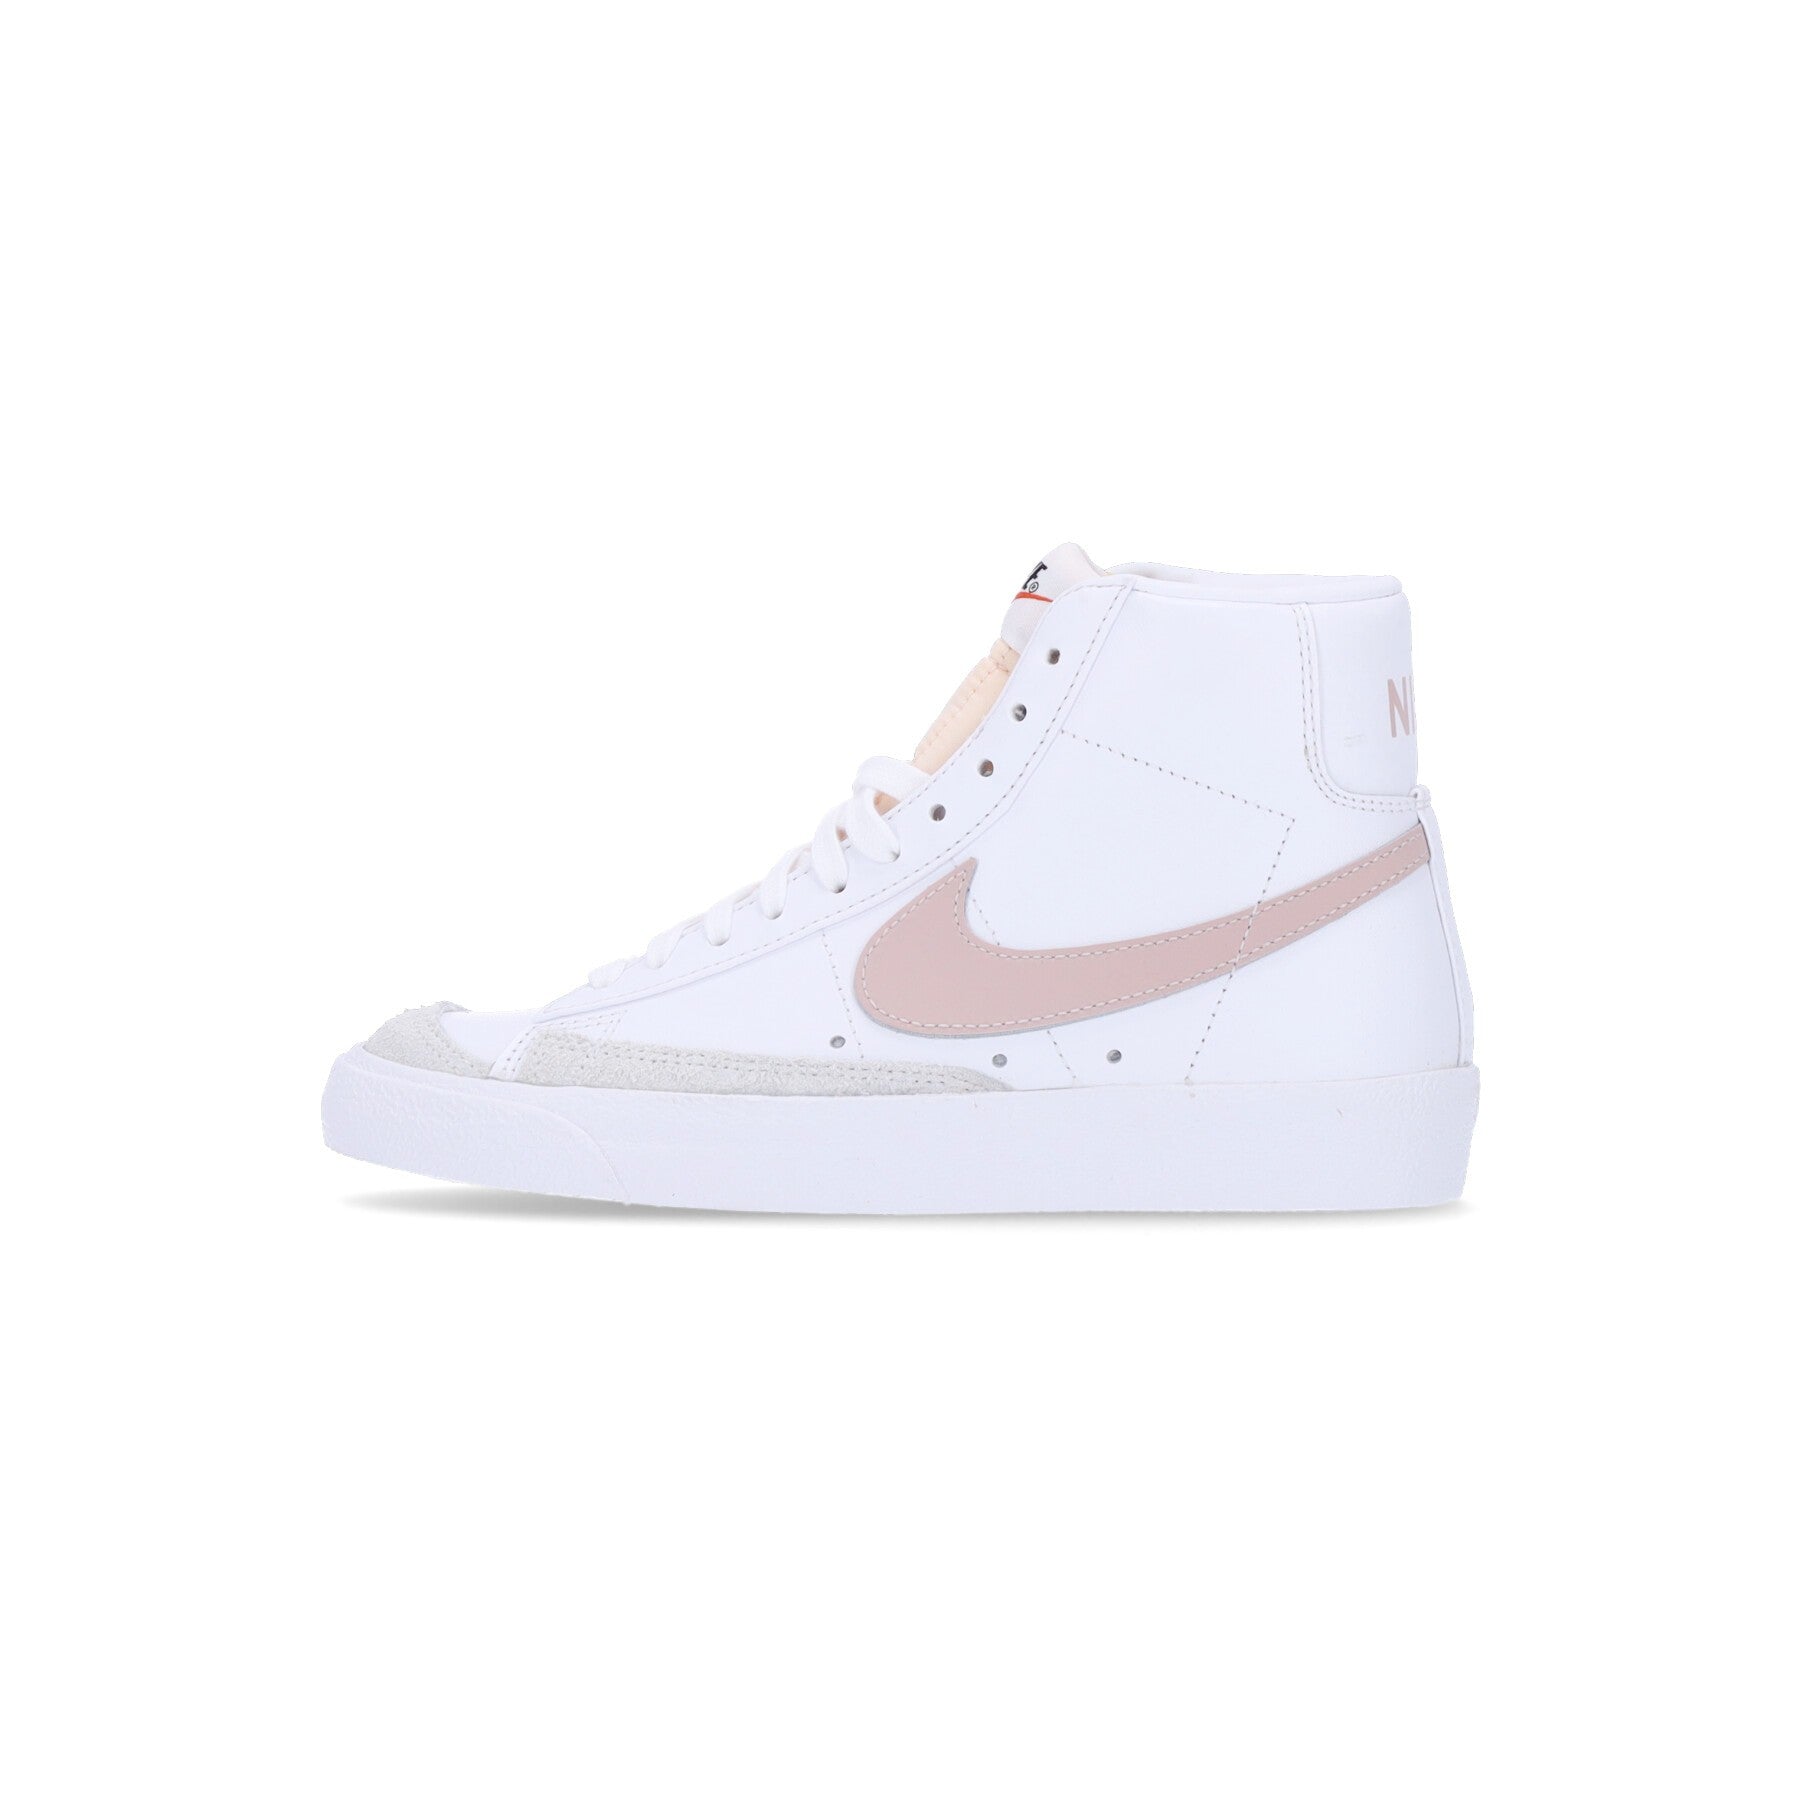 Nike, Scarpa Alta Donna W Blazer Mid 77, White/pink Oxford/black/summit White